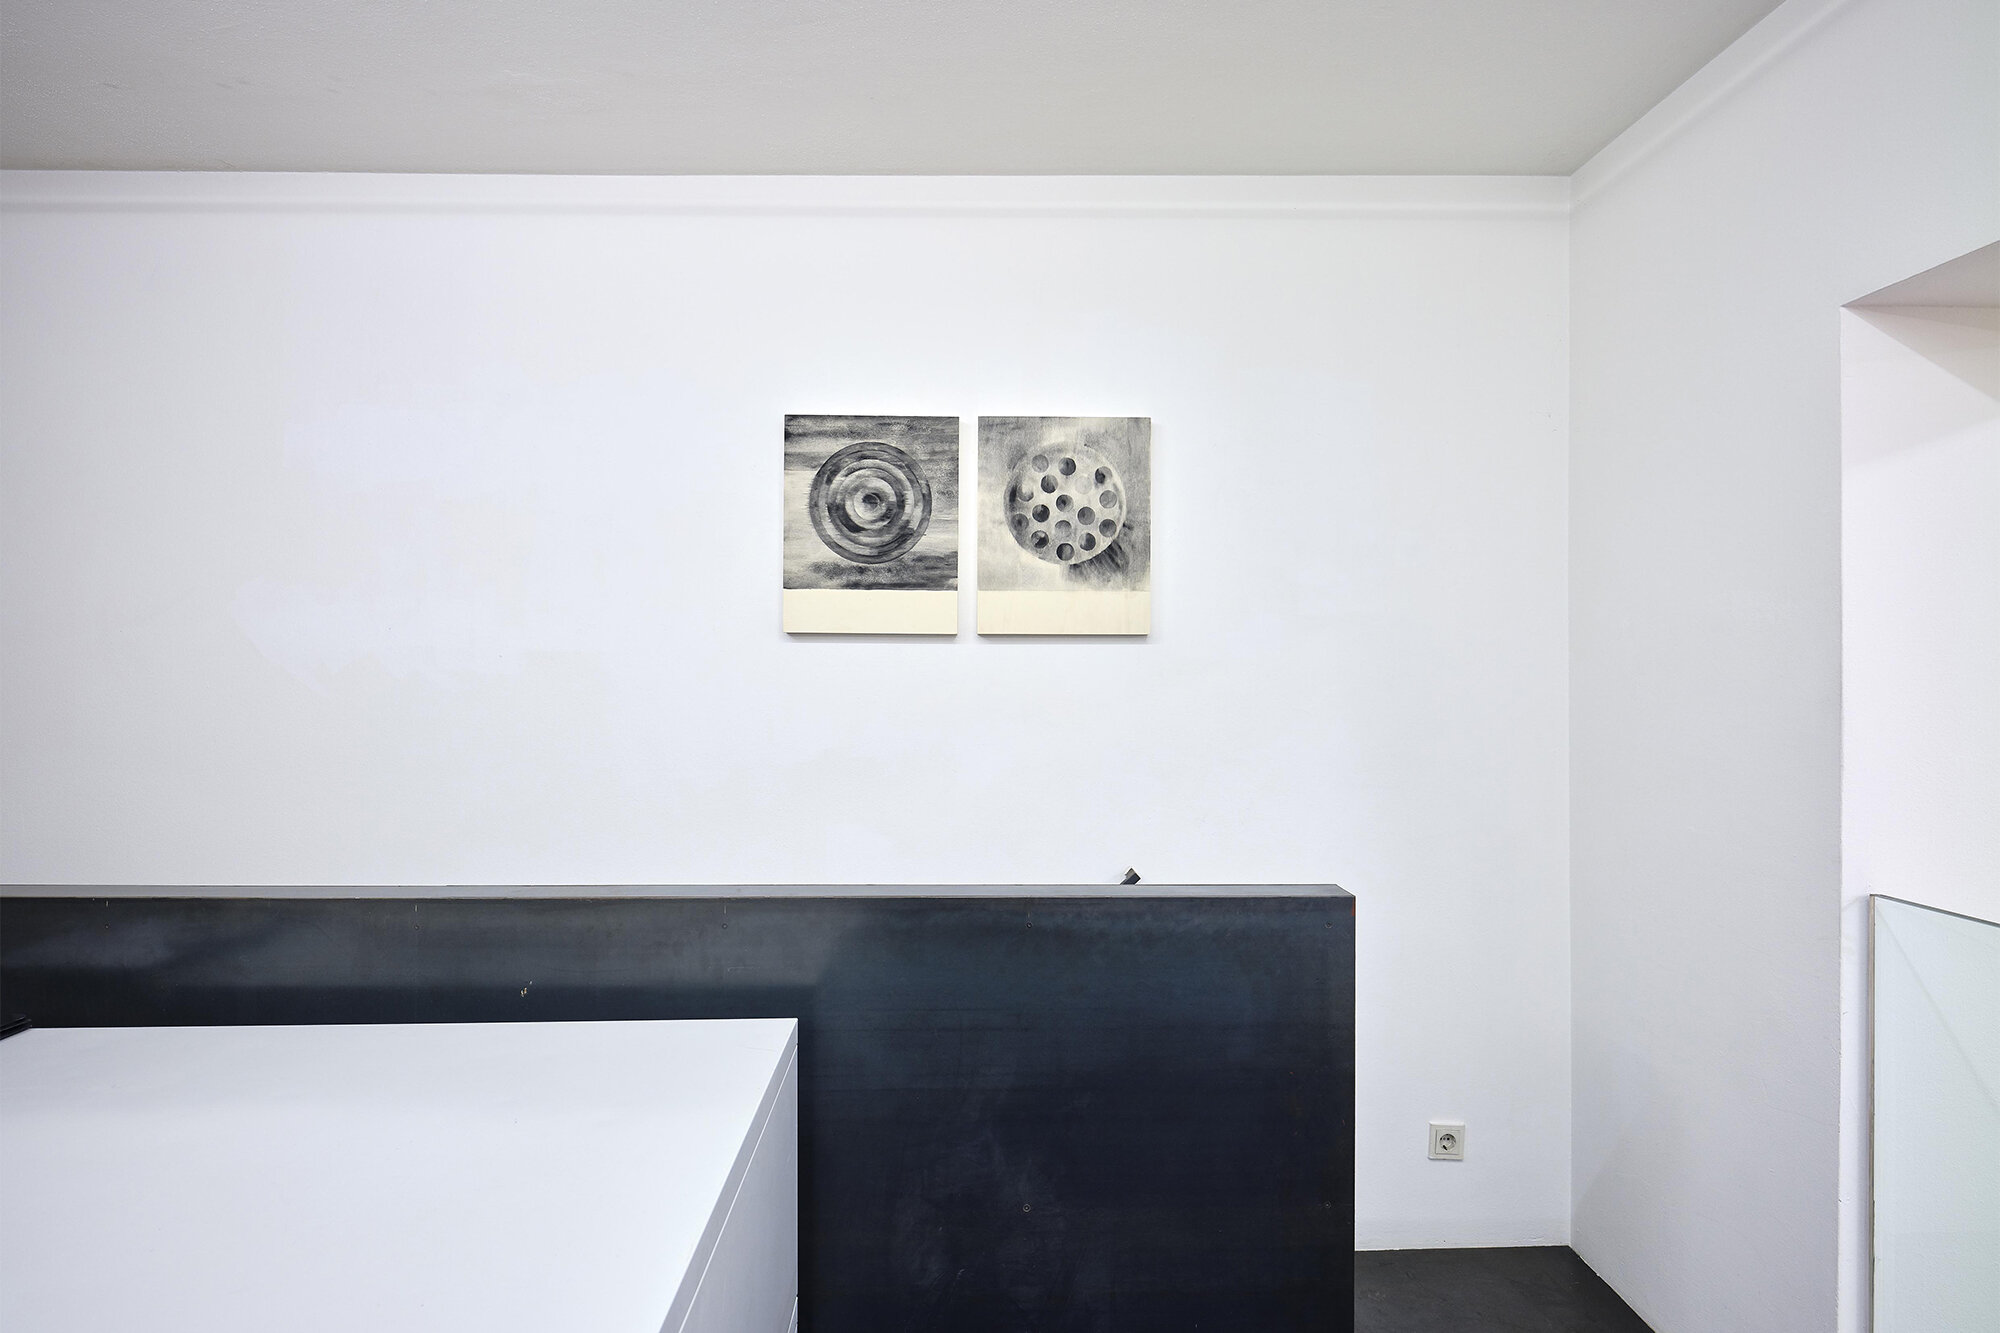 Galerie+Johann+Widauer-Exhibition-2020-Matt-Mullican-10.jpg